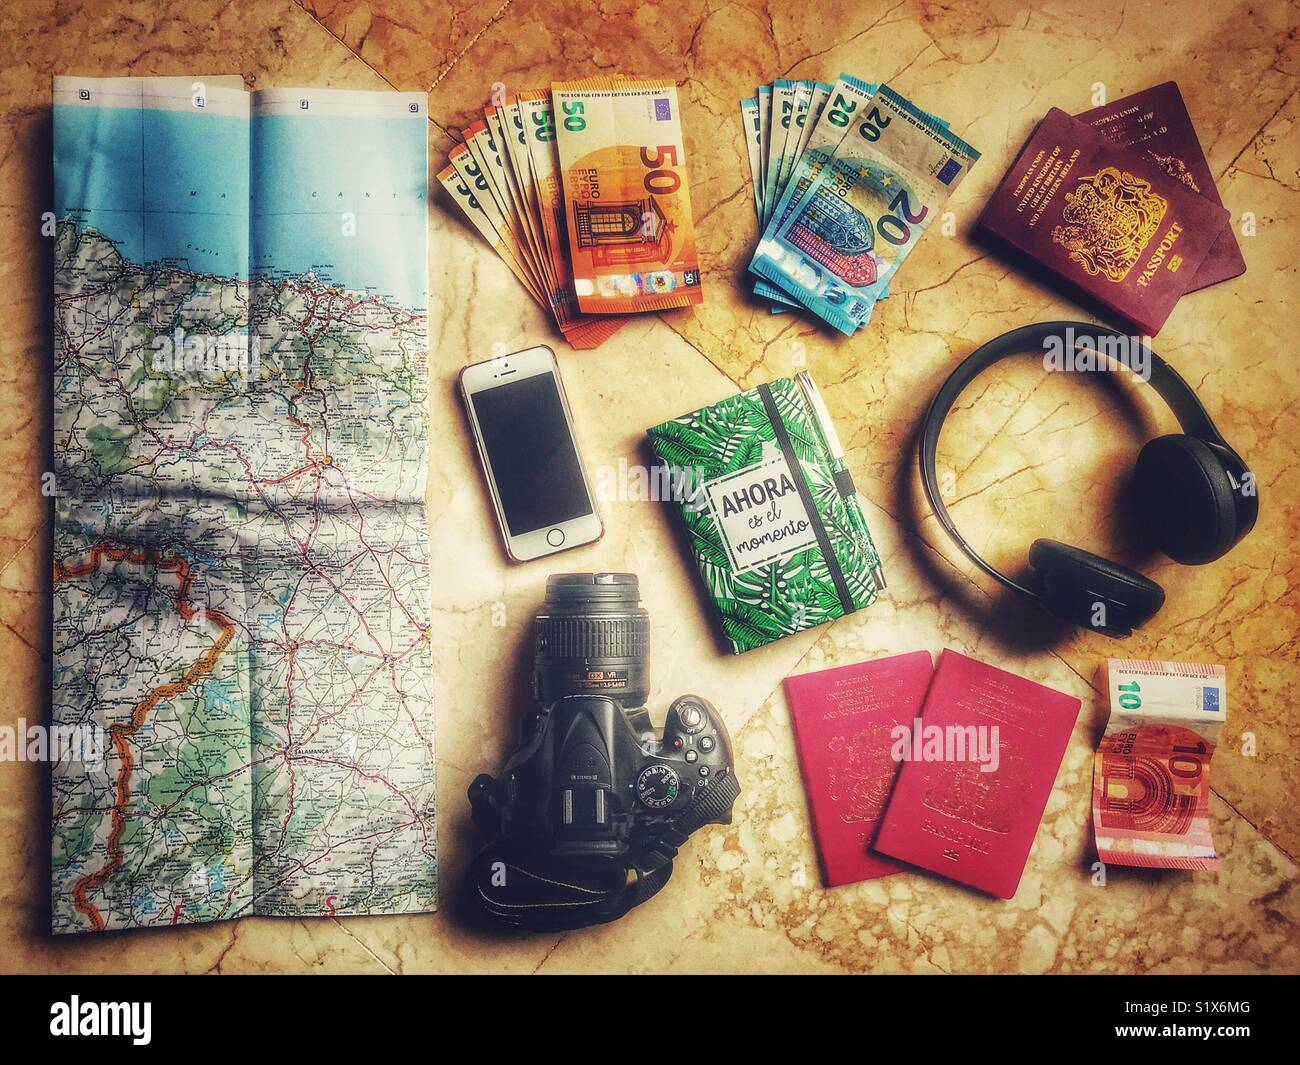 Fotografia Flatlay, articoli da viaggio inclusa MAPPA, passaporti, fotocamera reflex digitale, cuffie Beat, notebook, iPhone e euro. Foto Stock